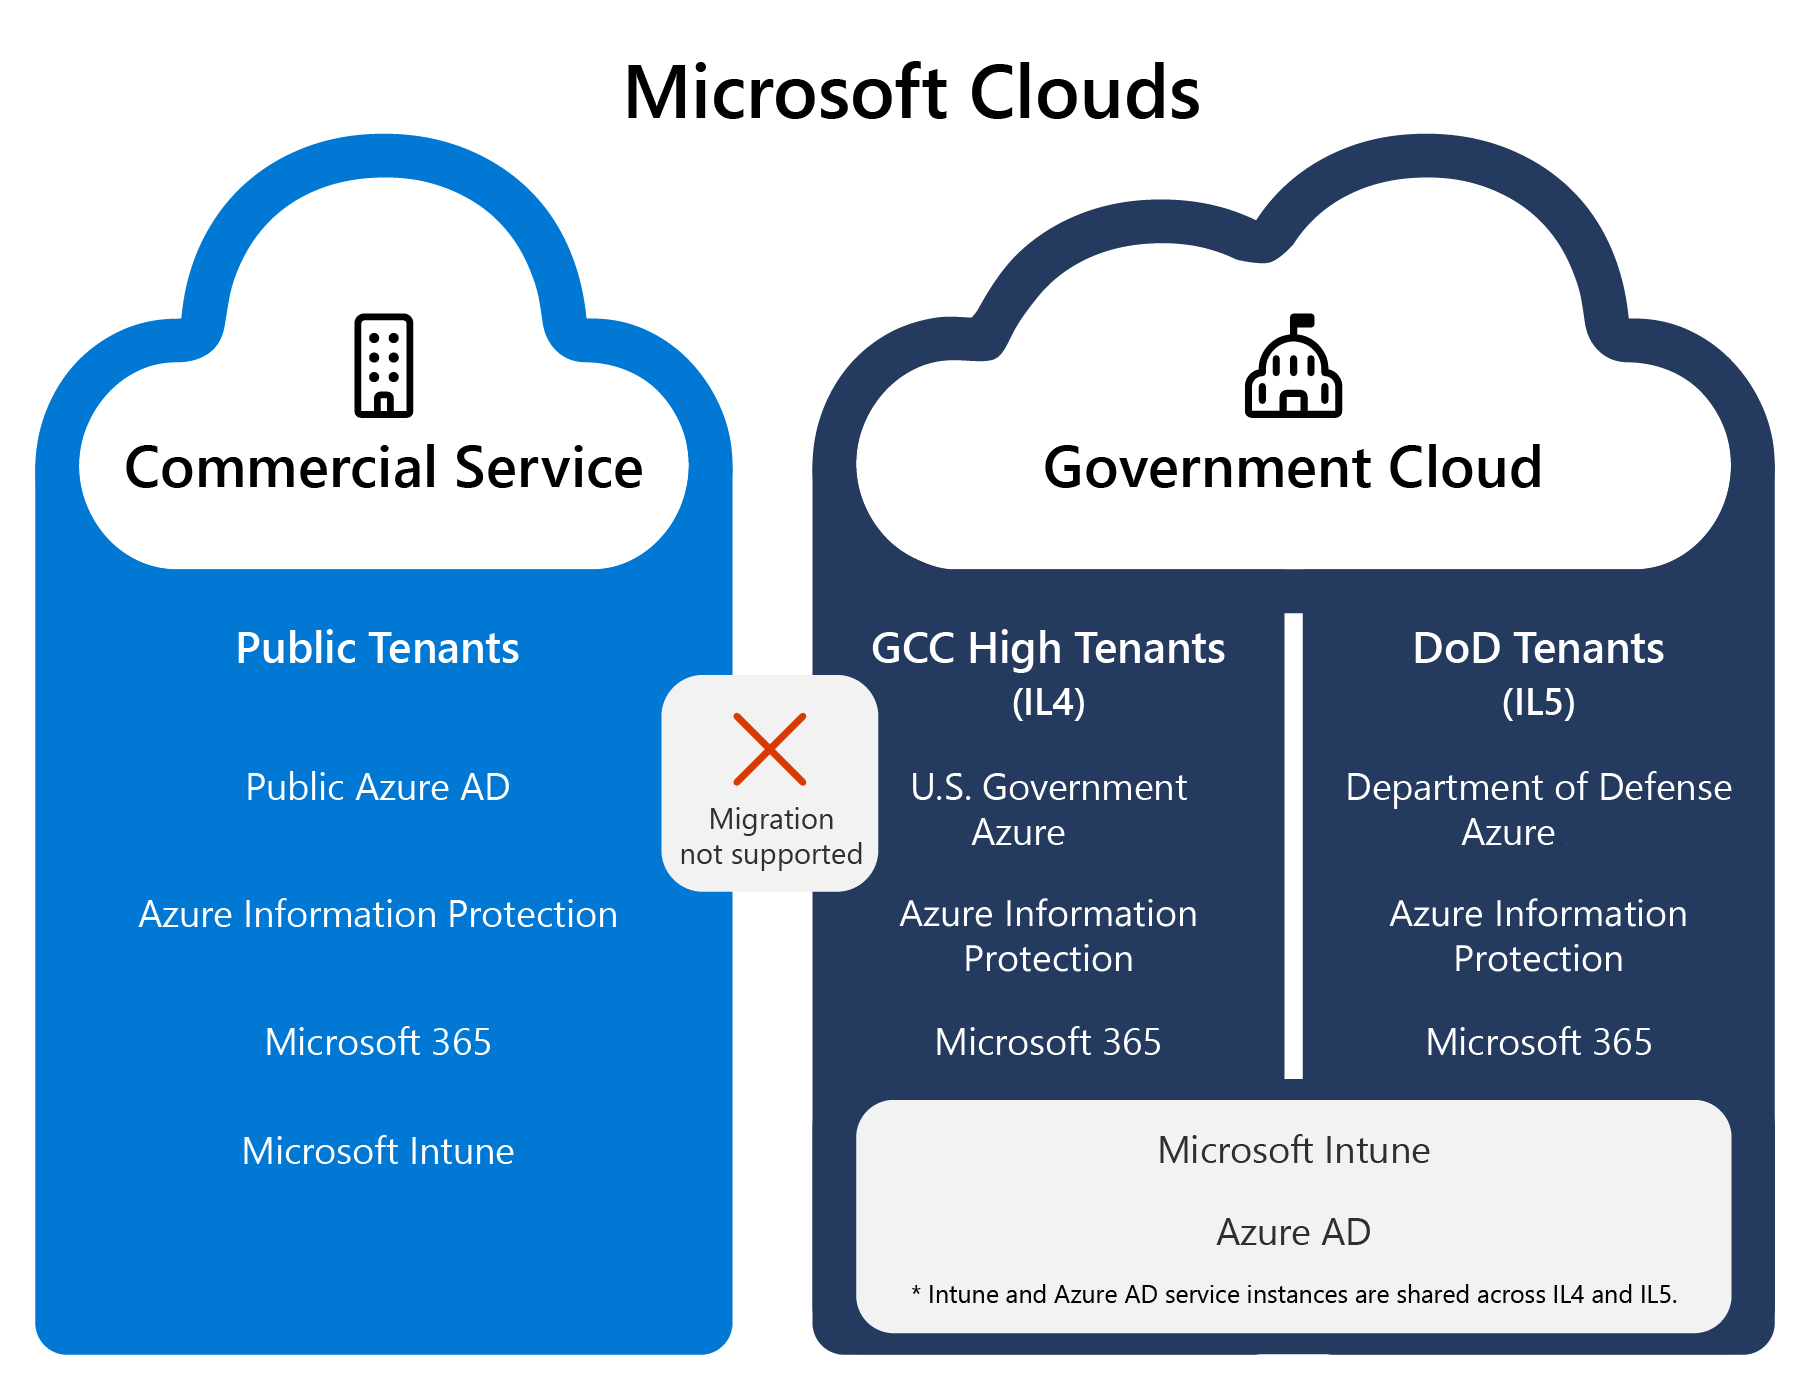 顯示 Microsoft Government 雲端的螢幕快照，包括 GCC High 和 DoD 服務，實際上與公用雲端和商業雲端實例分開。